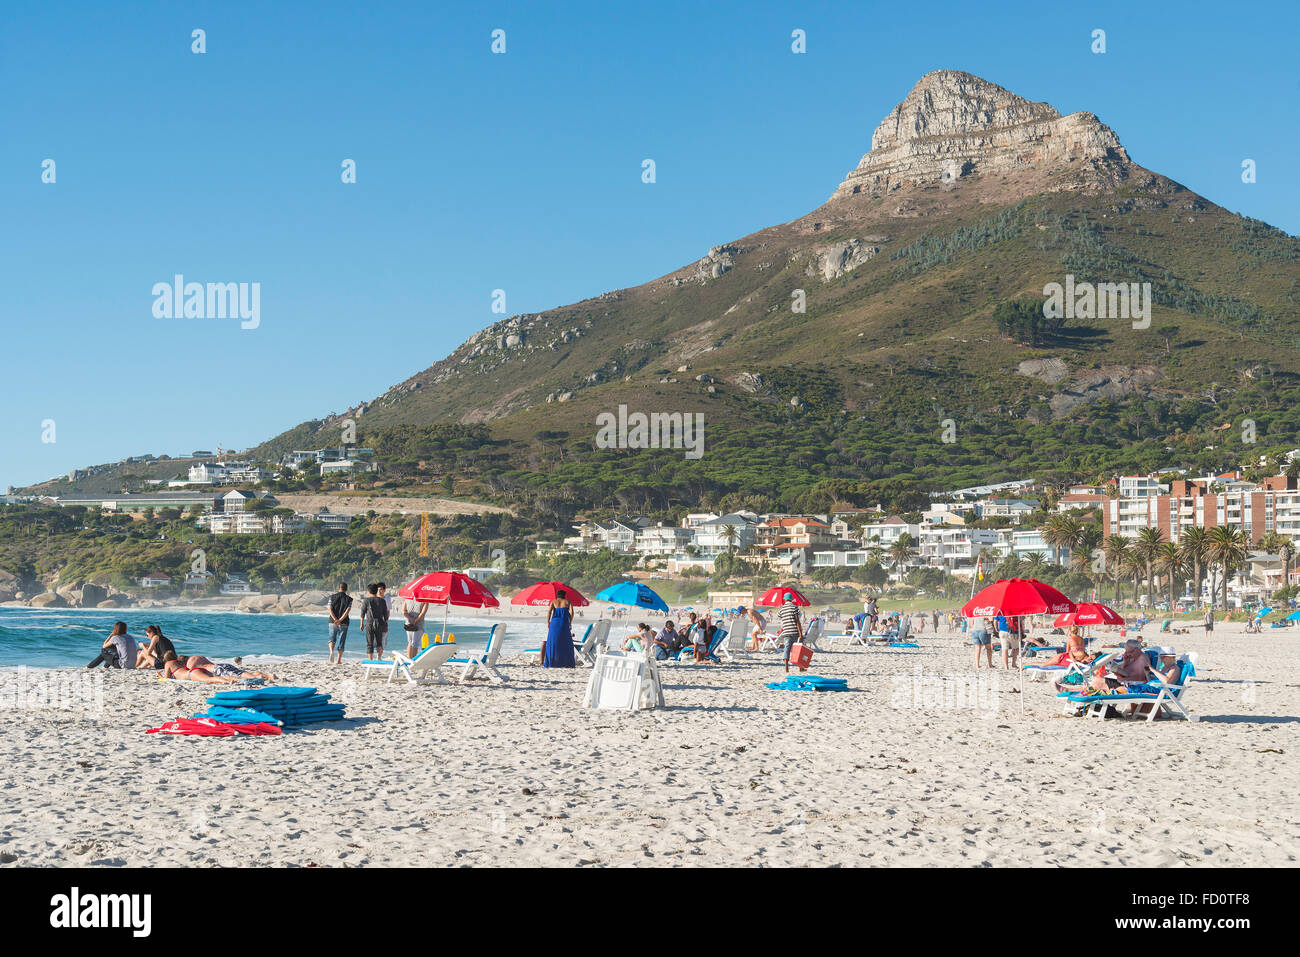 La plage de Camps Bay, Camps Bay, Cape Town, ville du Cap municipalité, province de Western Cape, Afrique du Sud Banque D'Images